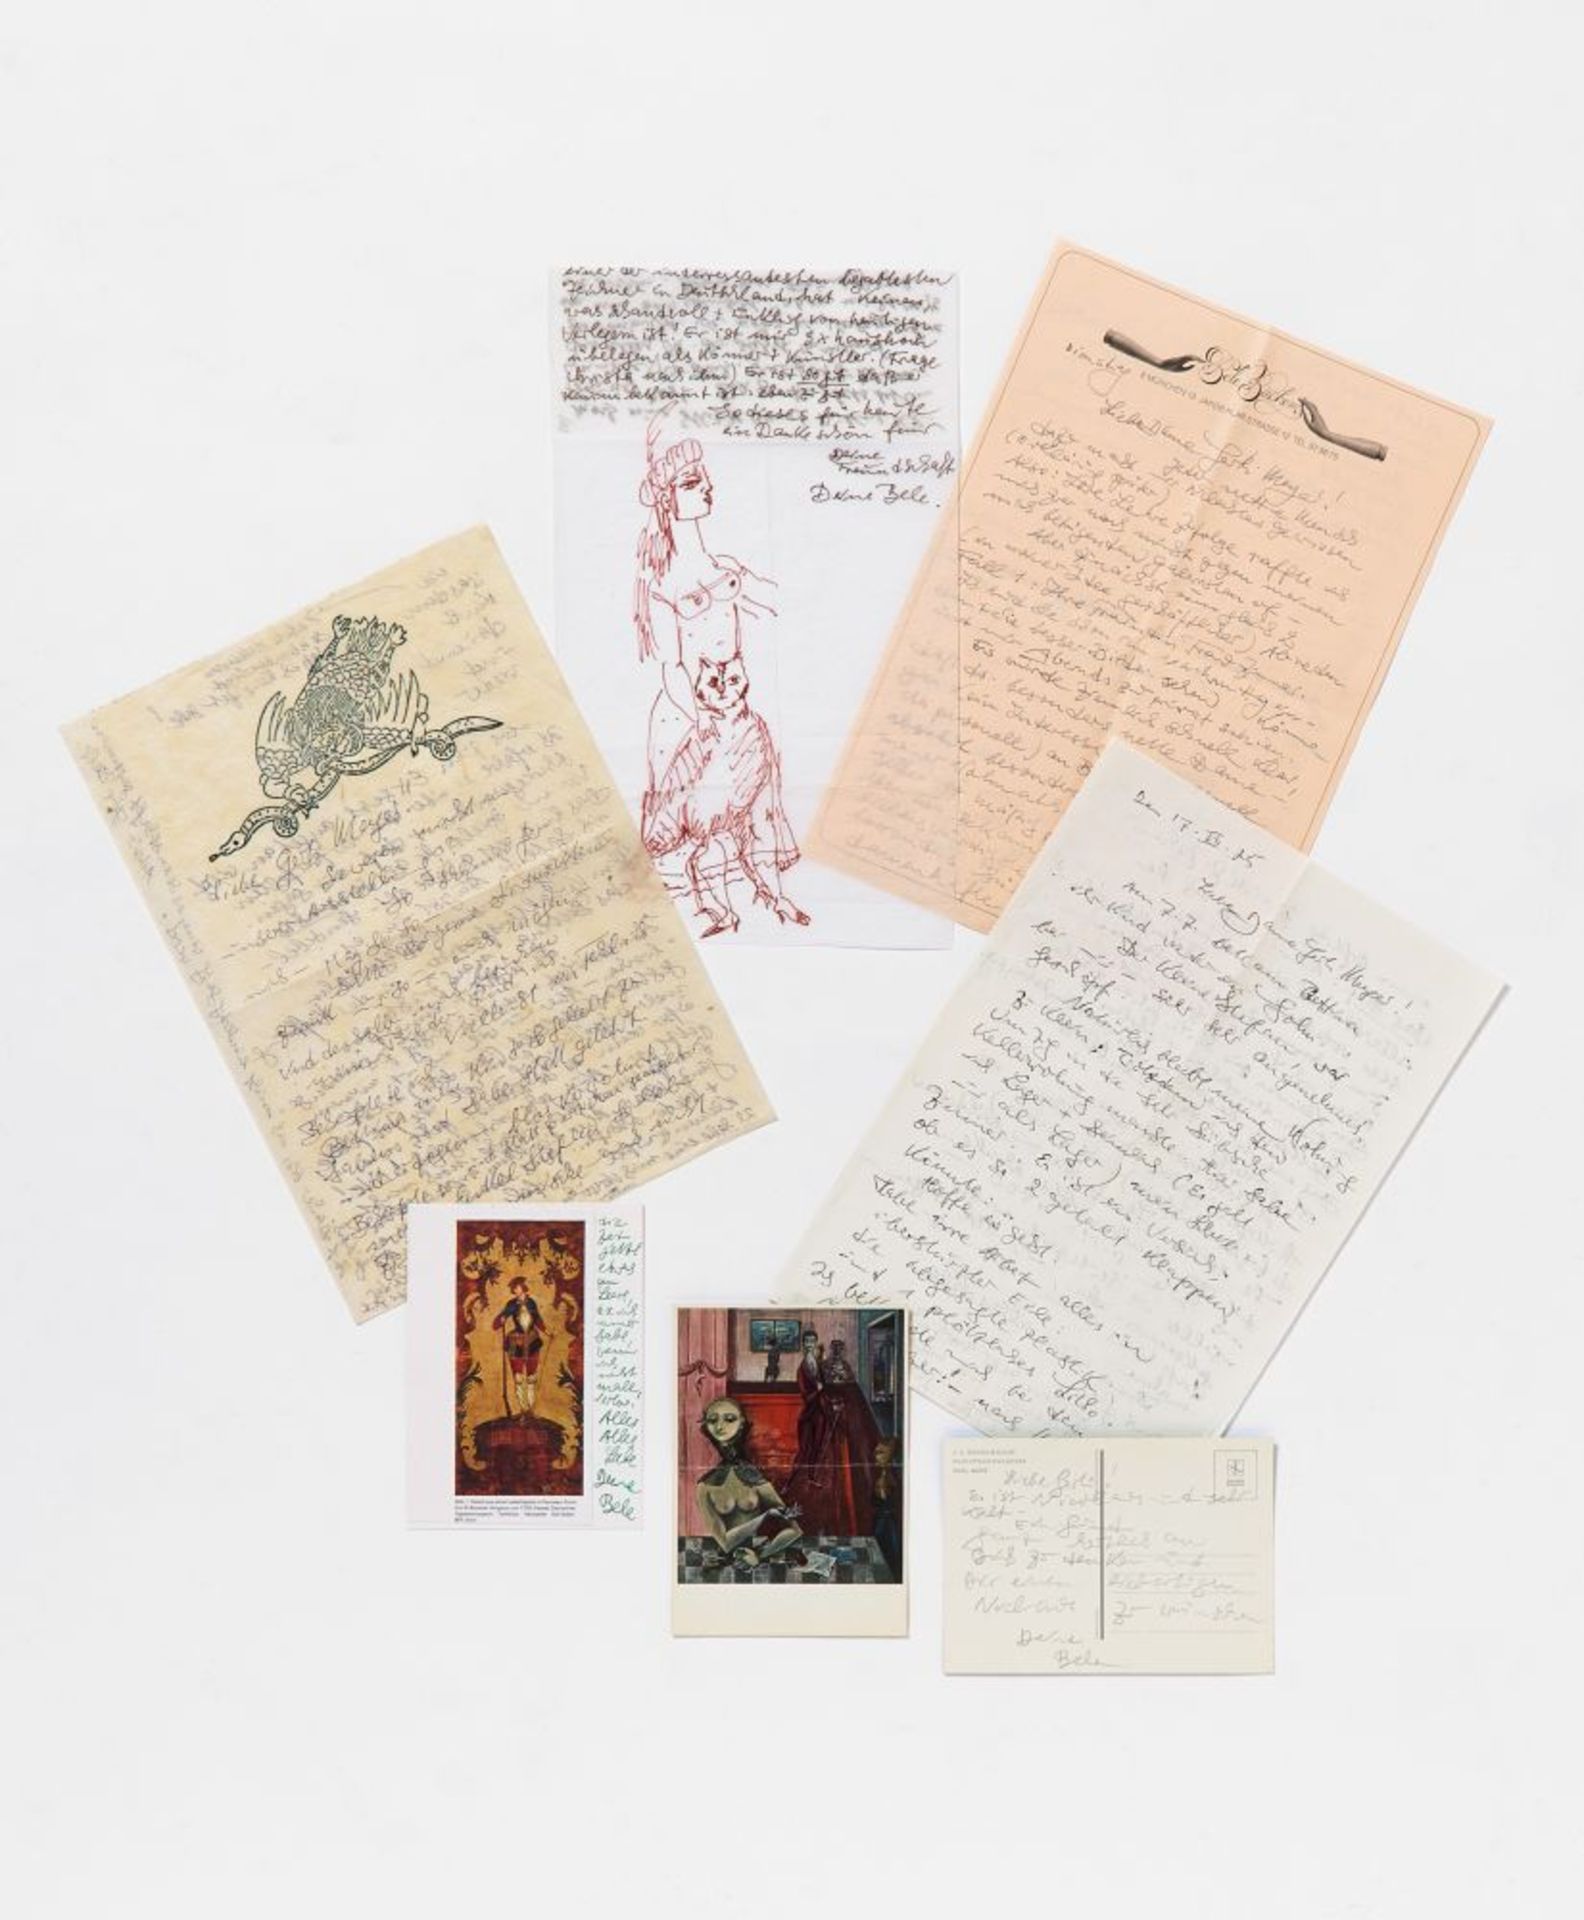 Bele Bachem, 40 eigh. Briefe, Karten, t. mit Zeichnungen. Von ca. 1974 bis um 2003. - An Gertrude Me - Image 3 of 12